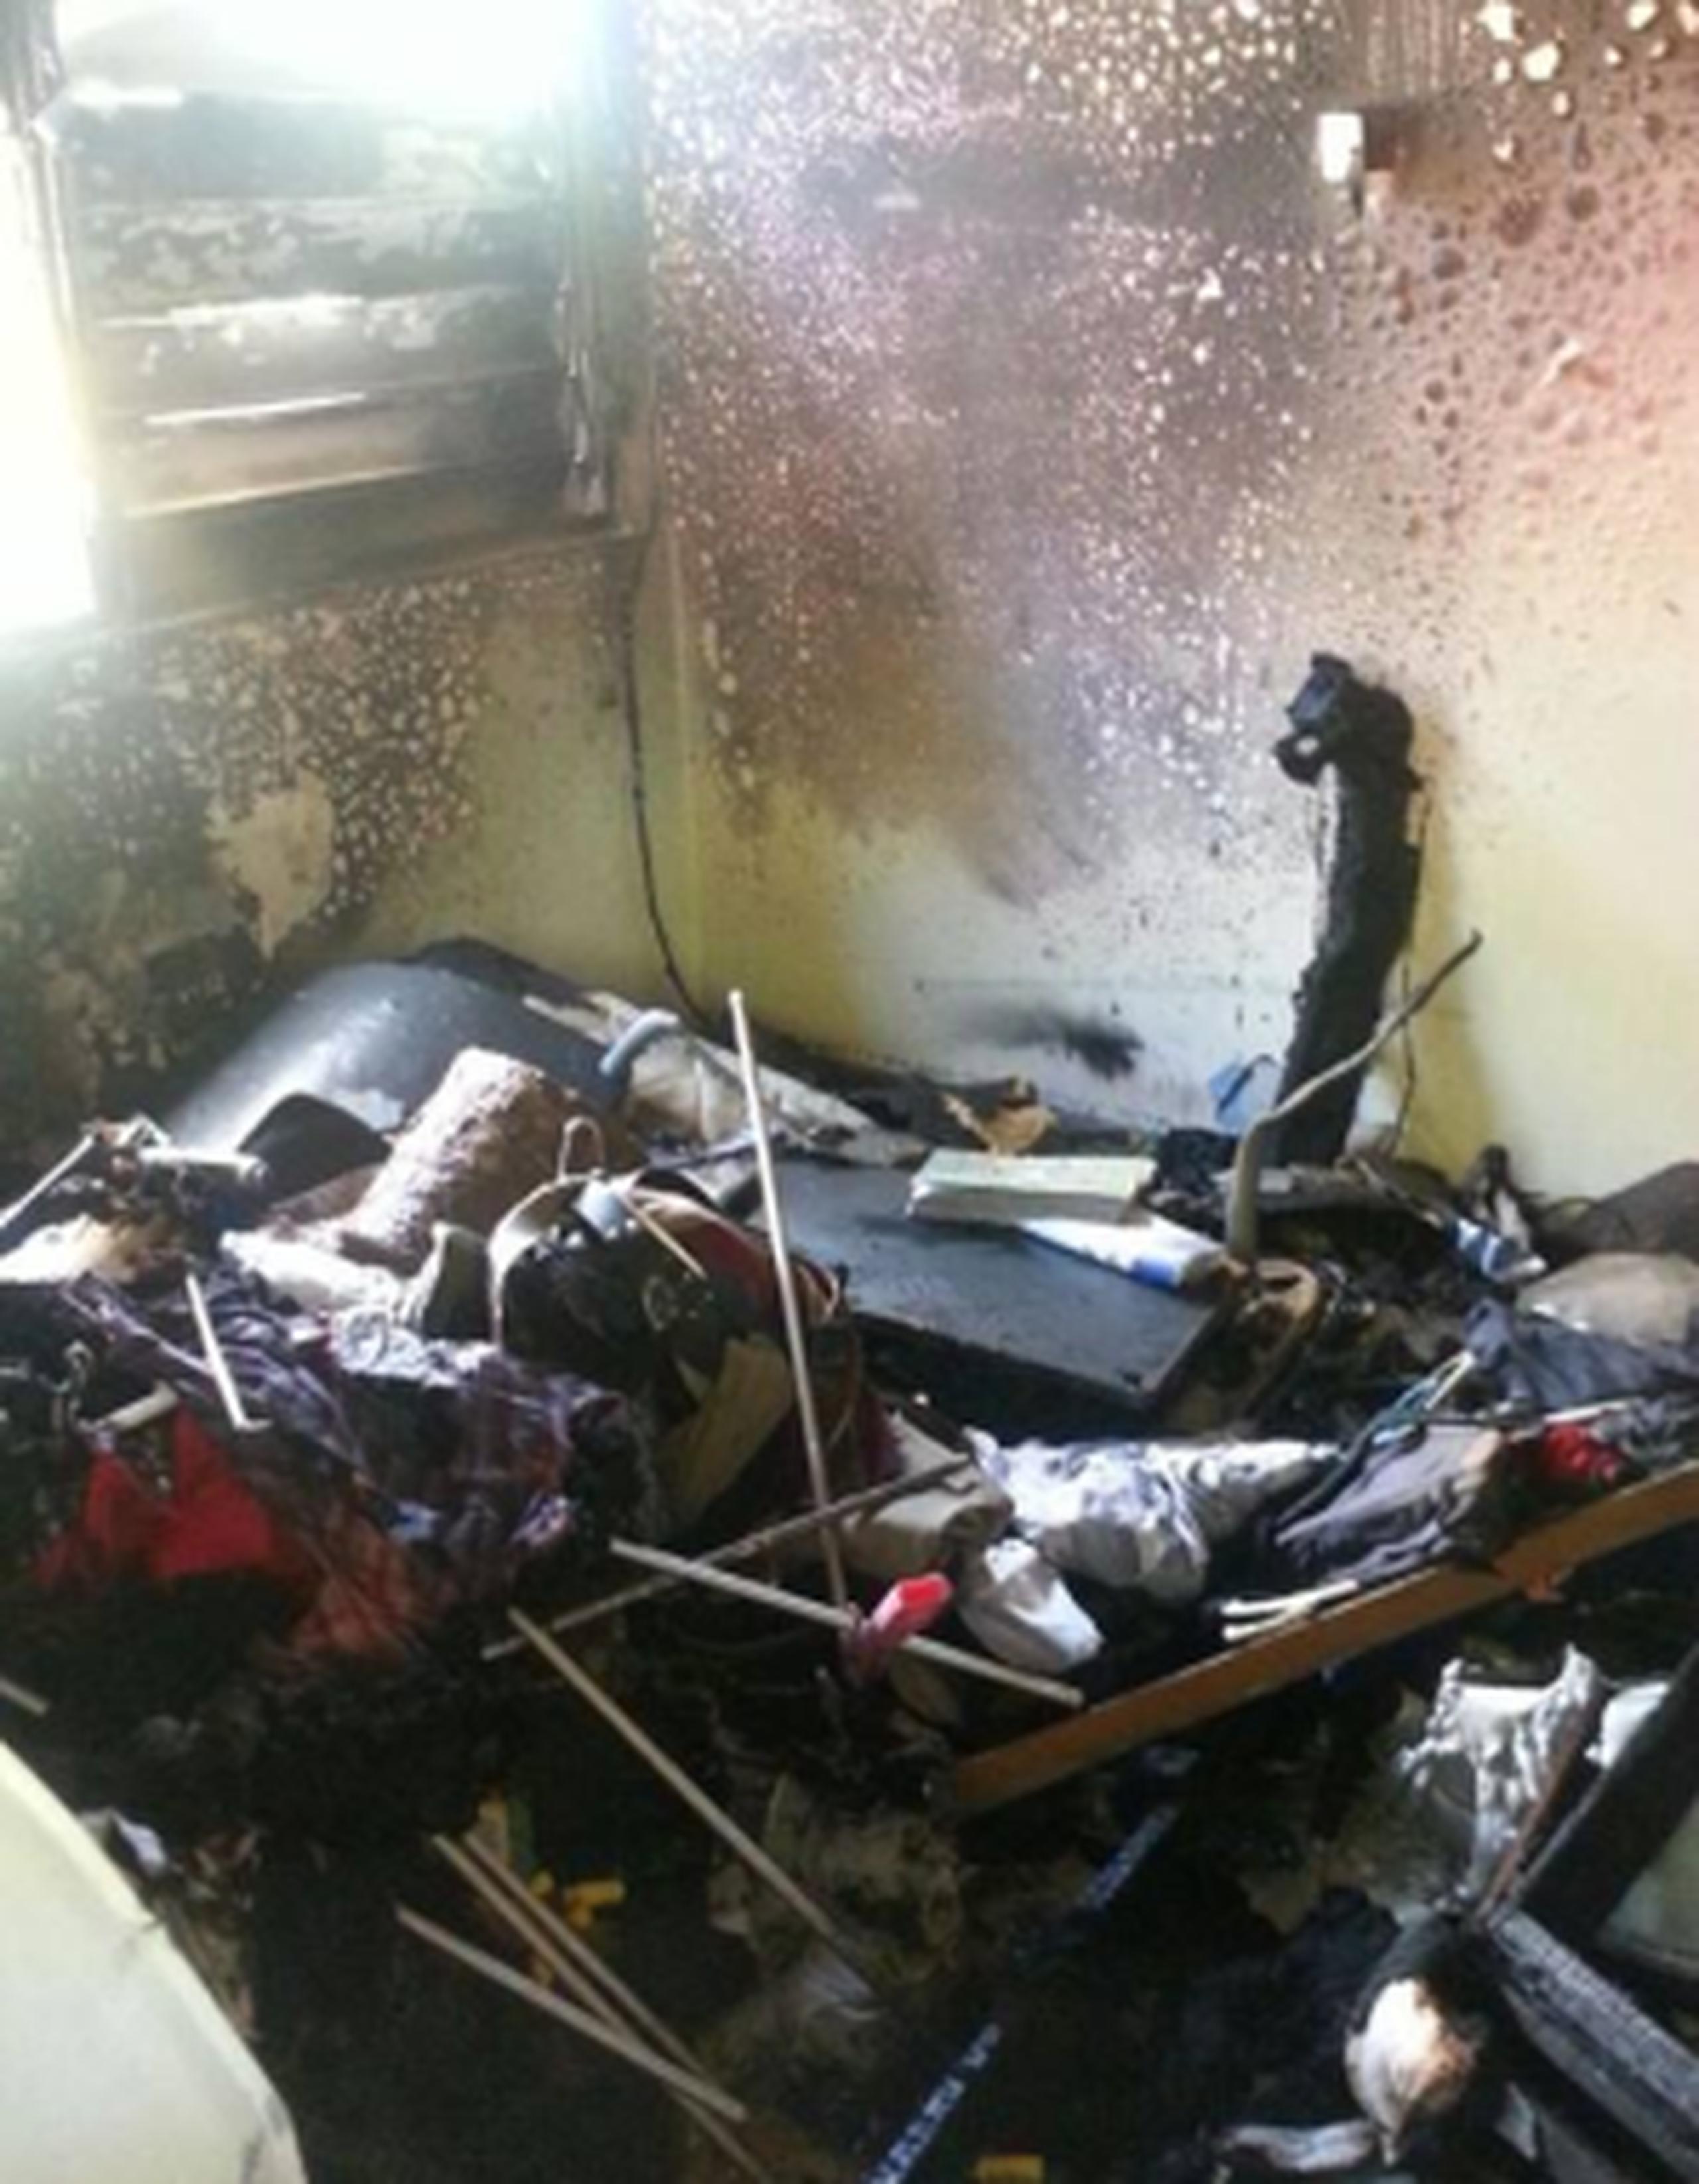 En el incendio se quemó el colchón de la cama, ropa, zapatos y otras pertenencias de la joven. (Facebook/Cuerpo de Bomberos de Puerto Rico)